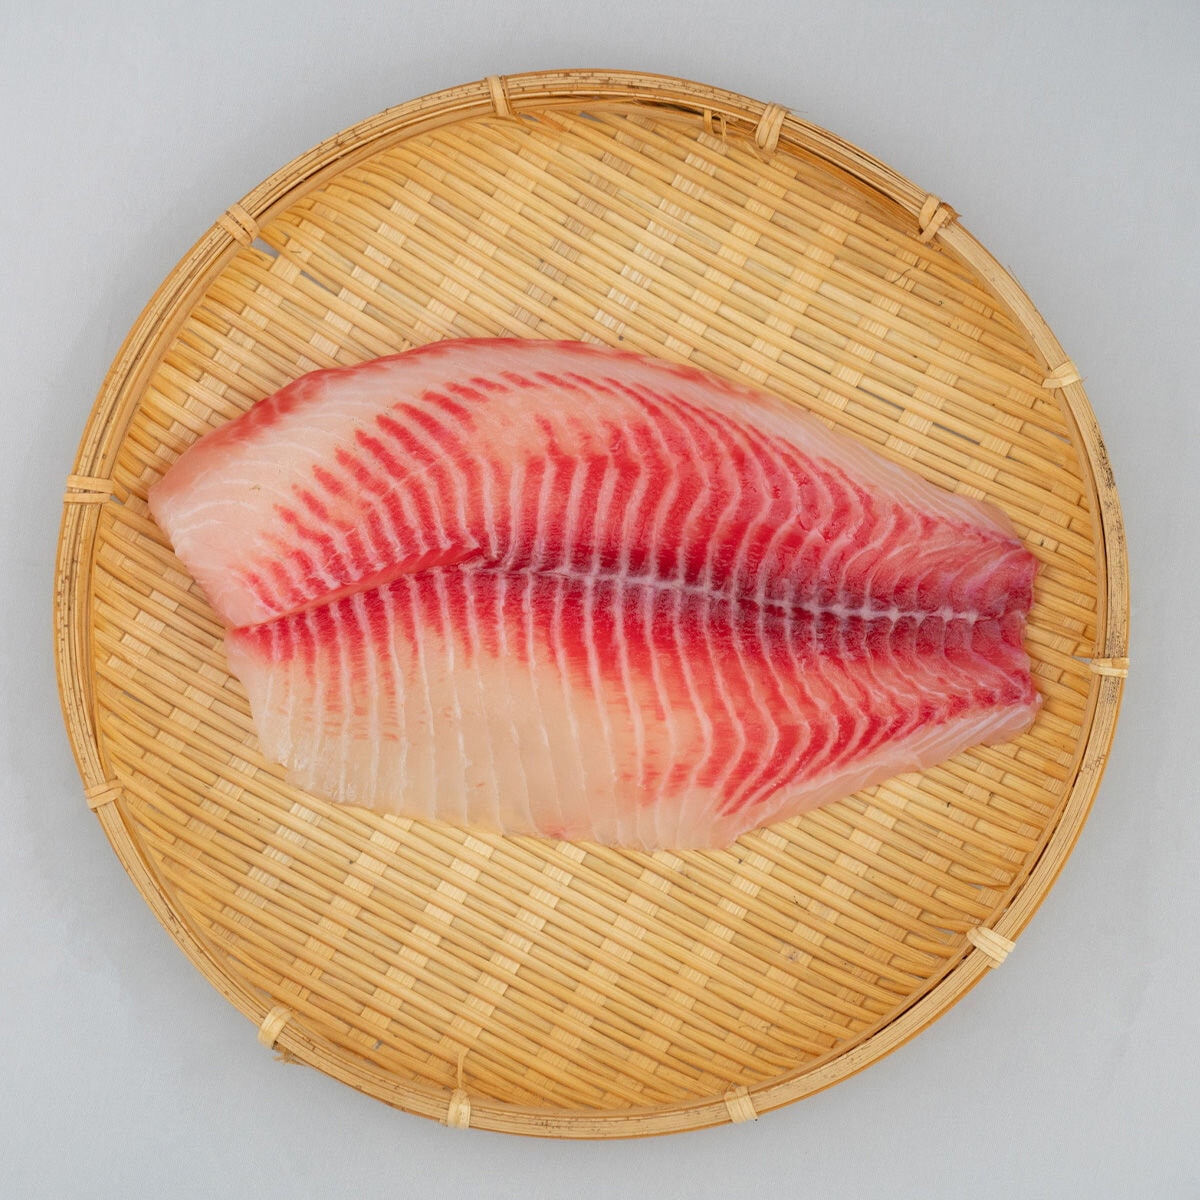 台灣冷凍鯛魚片 1.5公斤